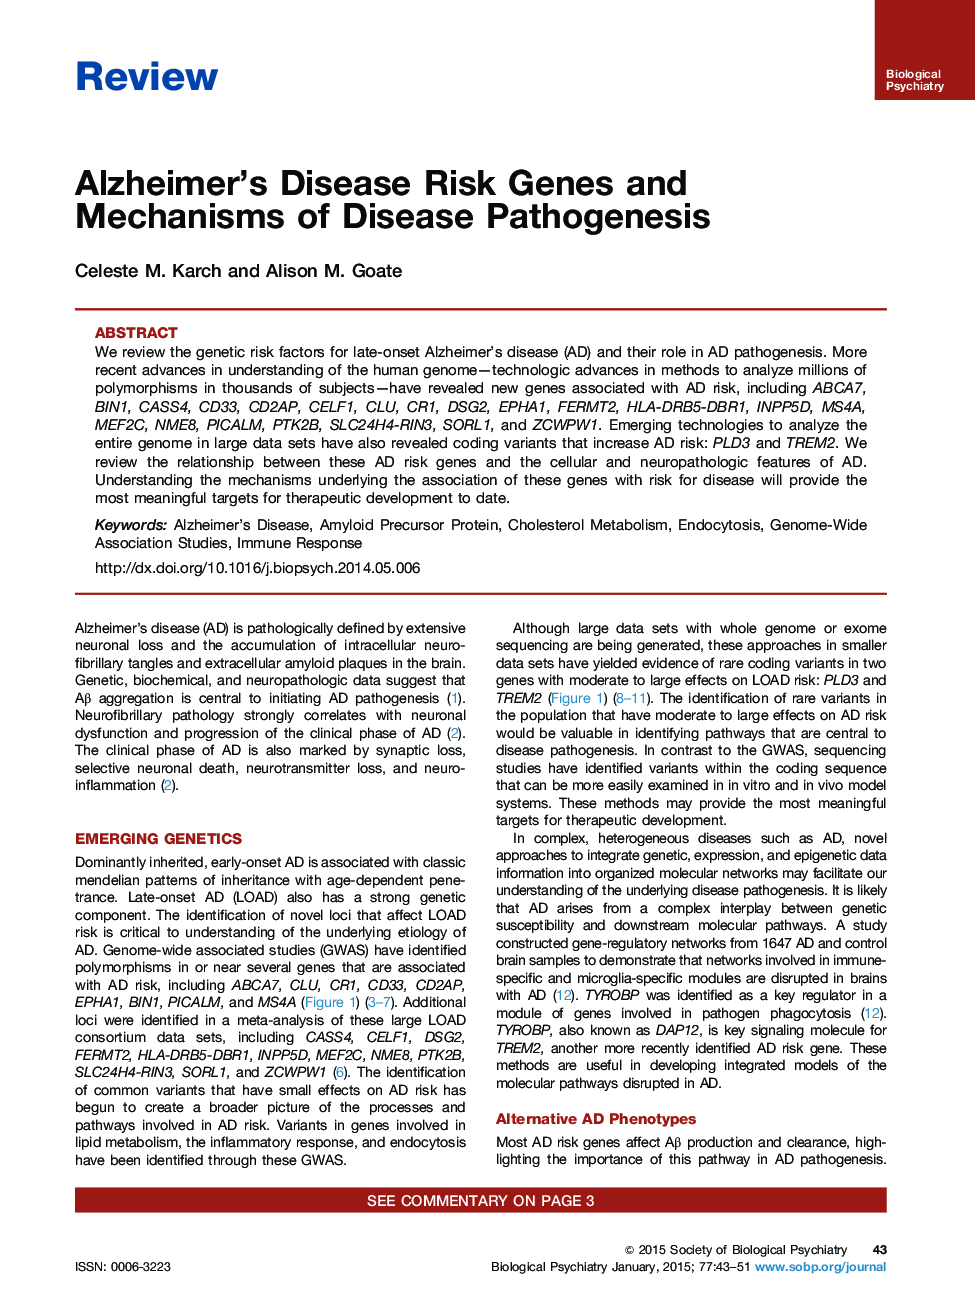 ژن های خطر بیماری آلزایمر و مکانیزم های پاتوژنز بیماری 